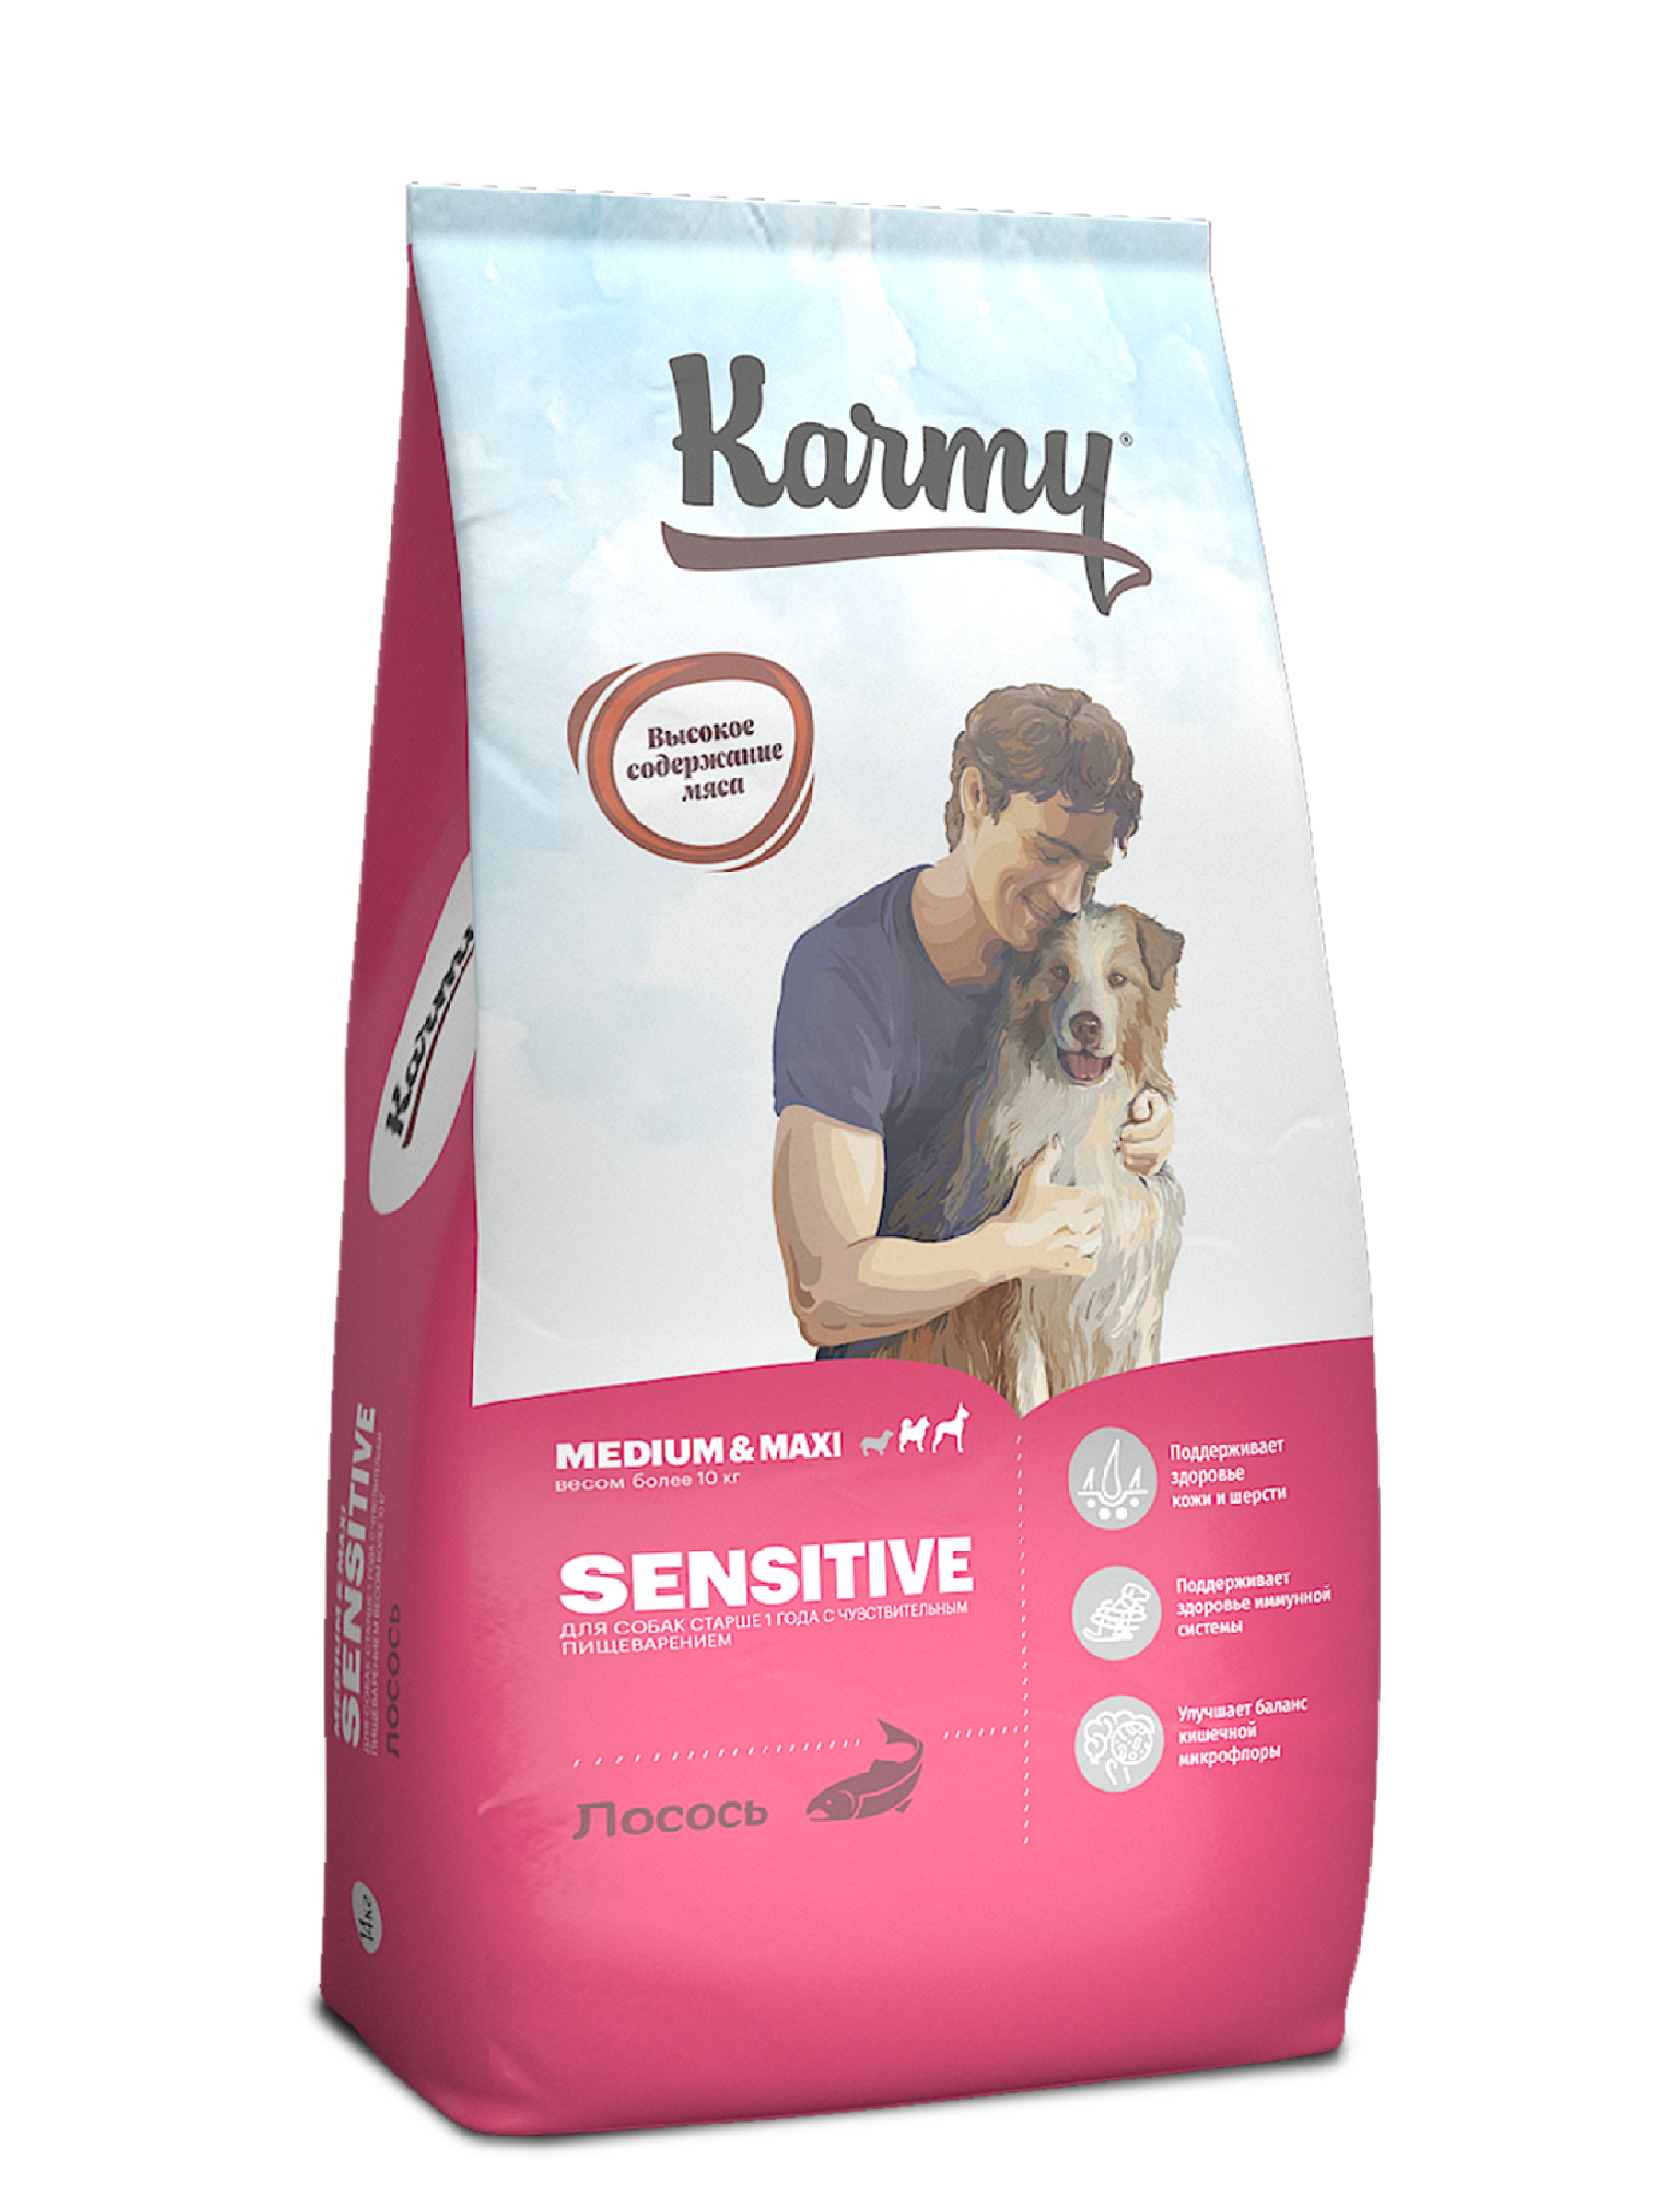 Сухой корм для собак средних и крупных пород Karmy Sensitive Medium & Maxi, лосось, 14кг